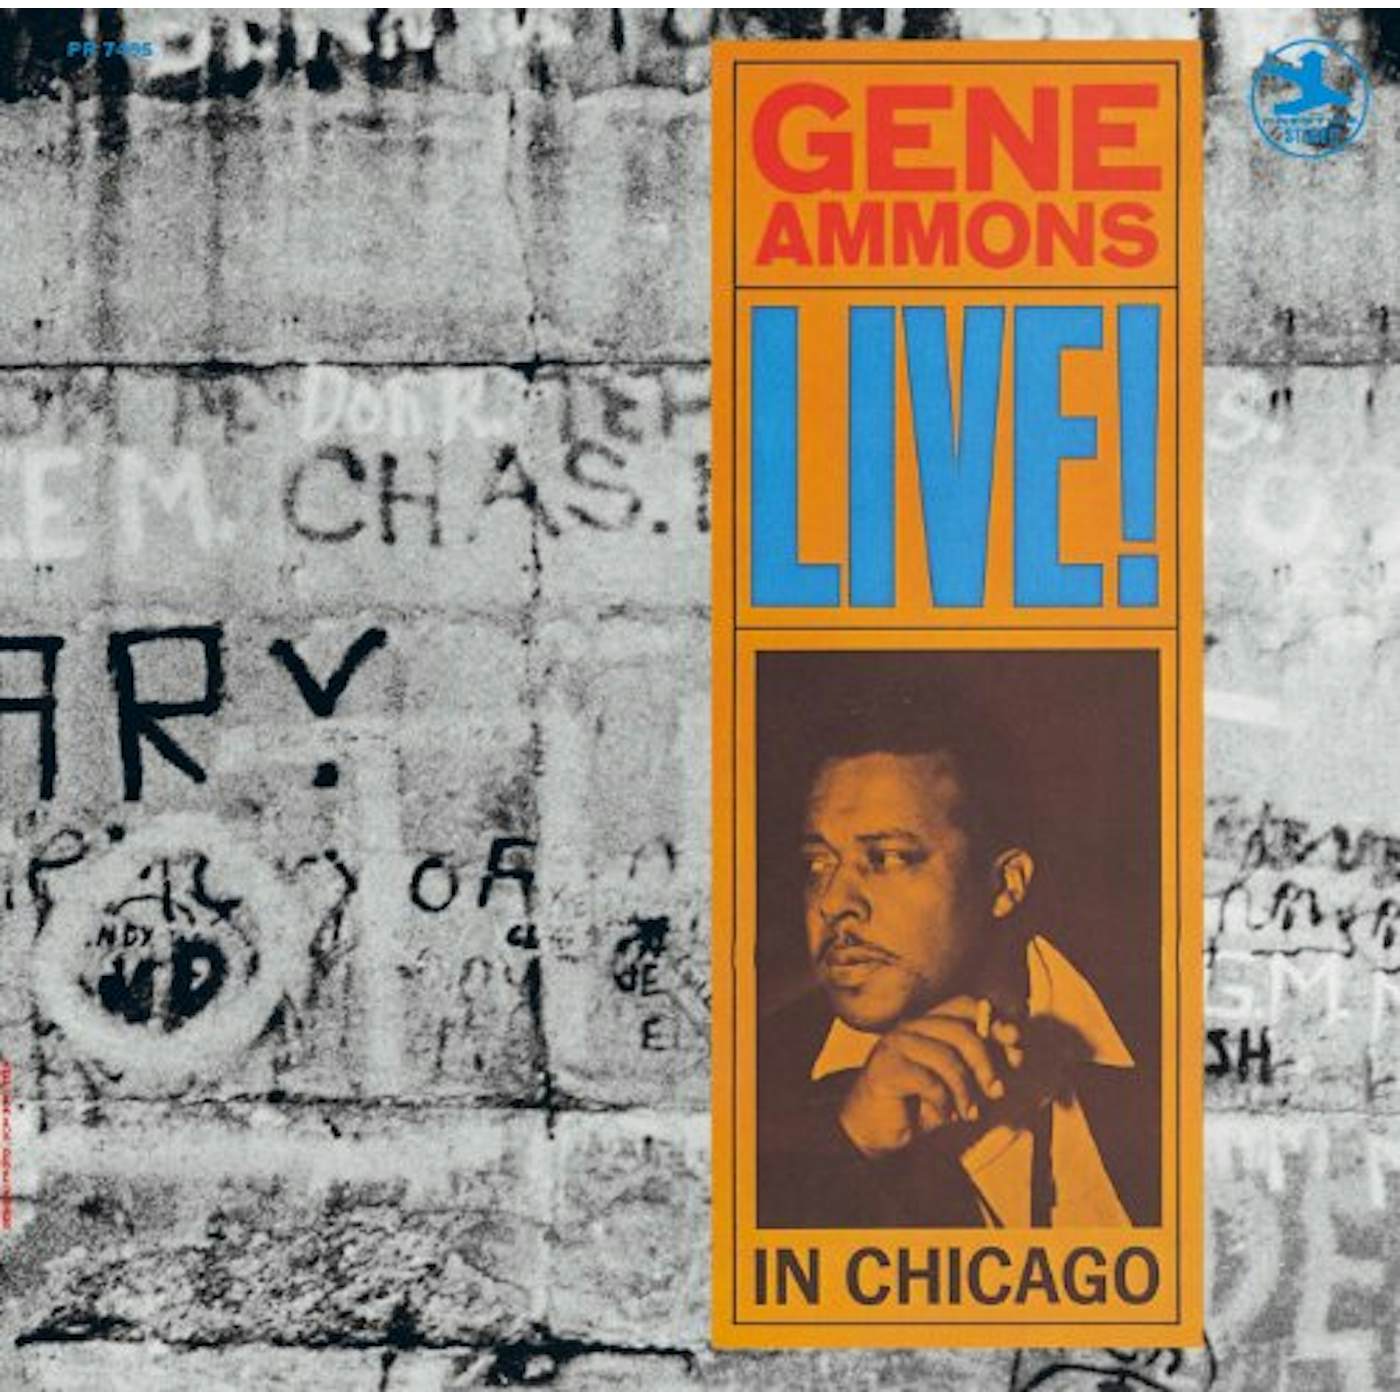 Gene Ammons LIVE! IN CHICAGO CD